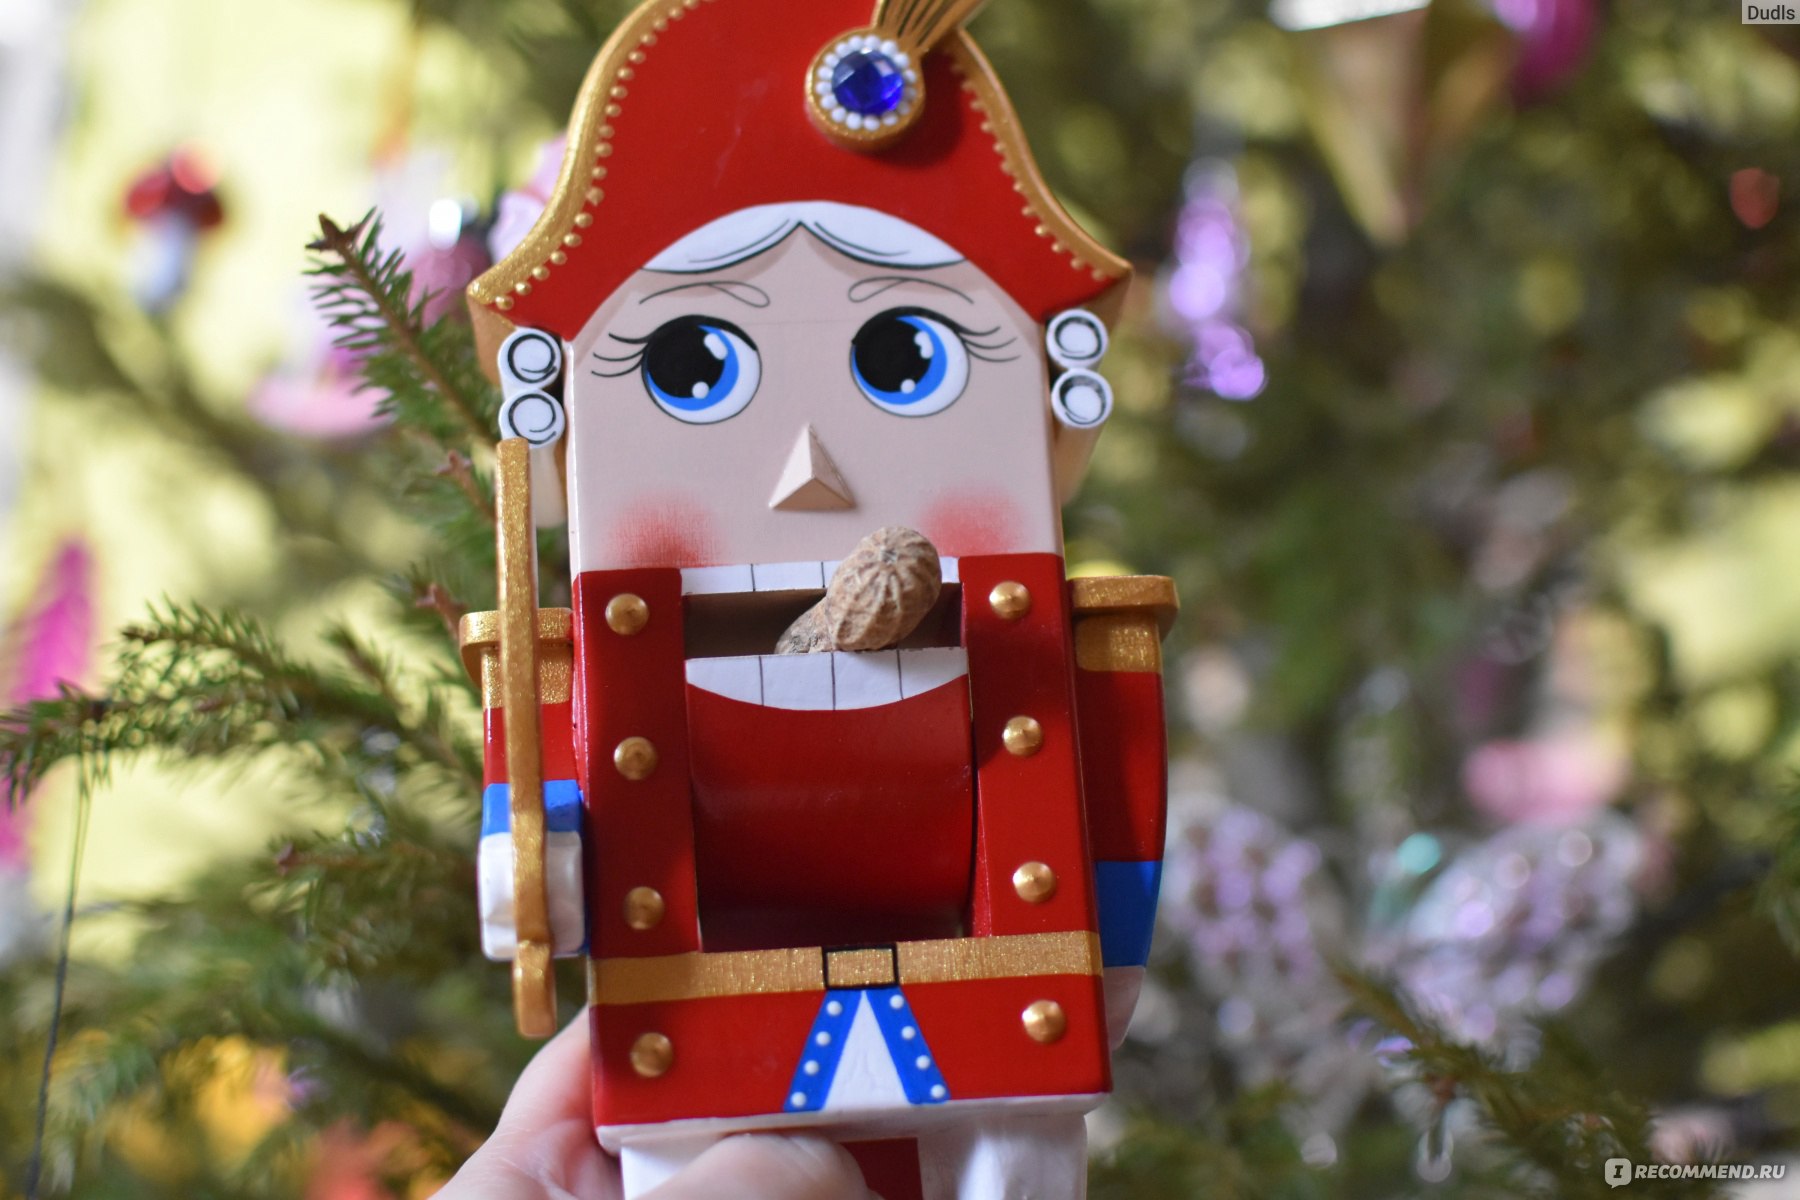 Русские игрушки кукла Щелкунчик Орехокол 26 см Любимый герой Артикул 00075 фото